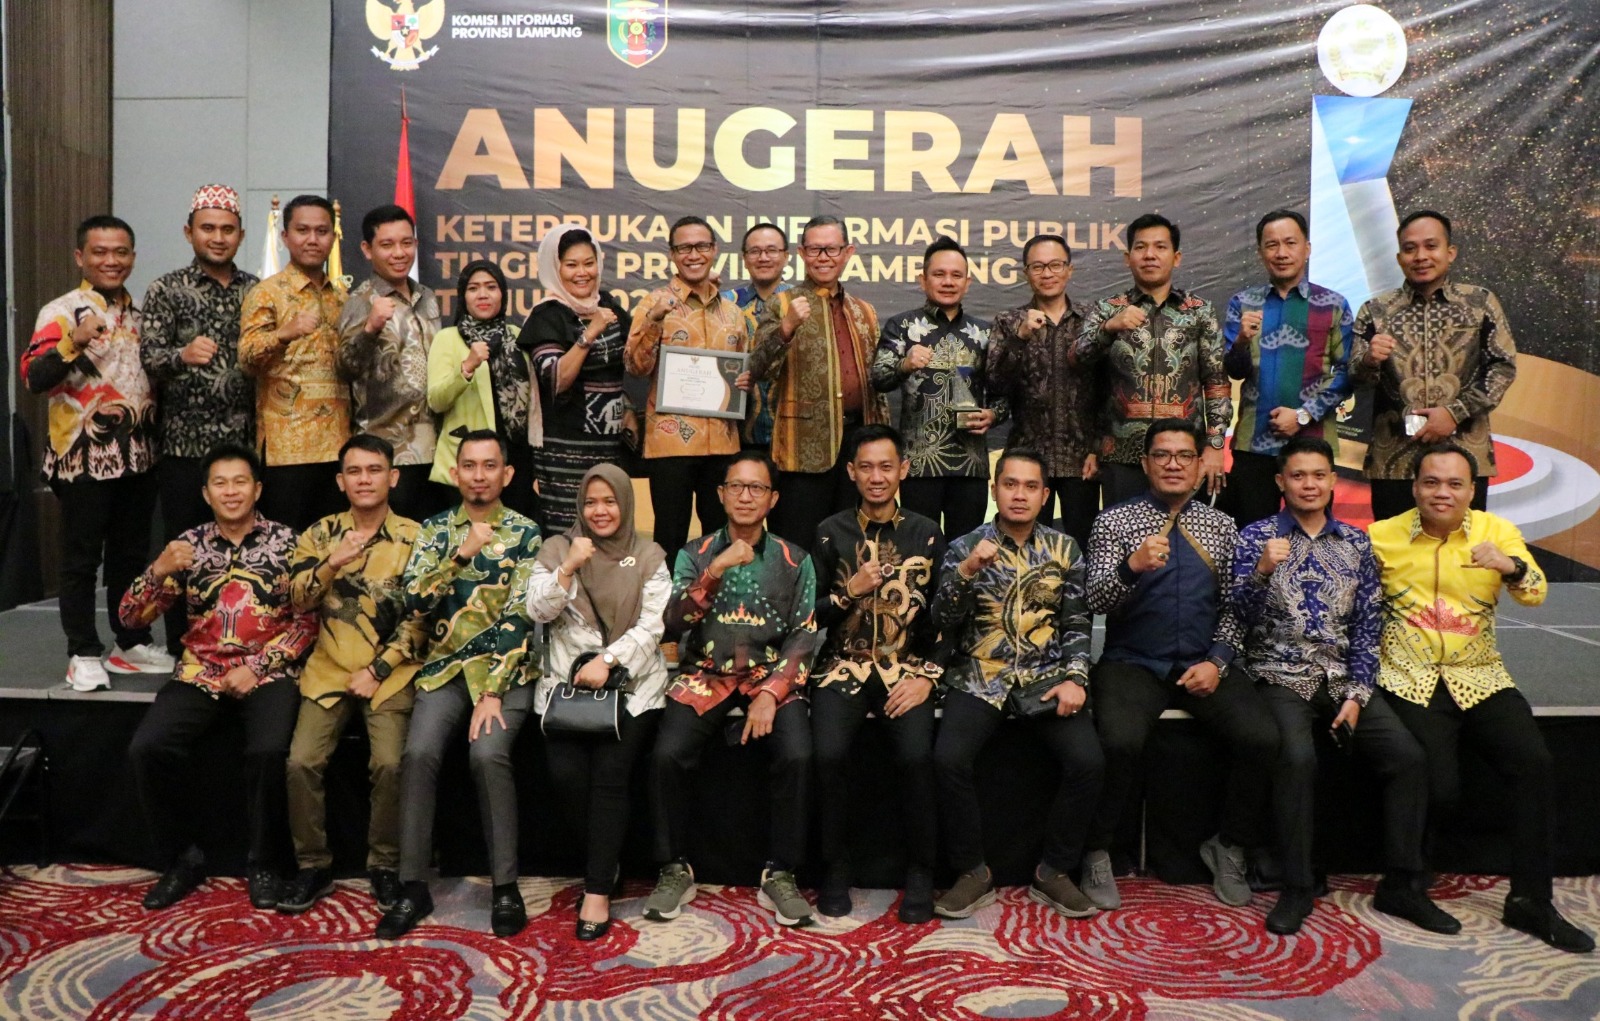 Pemerintah Provinsi Lampung Berkomitmen Tingkatkan Pelayanan Informasi Melalui Keterbukaan Informasi Publik